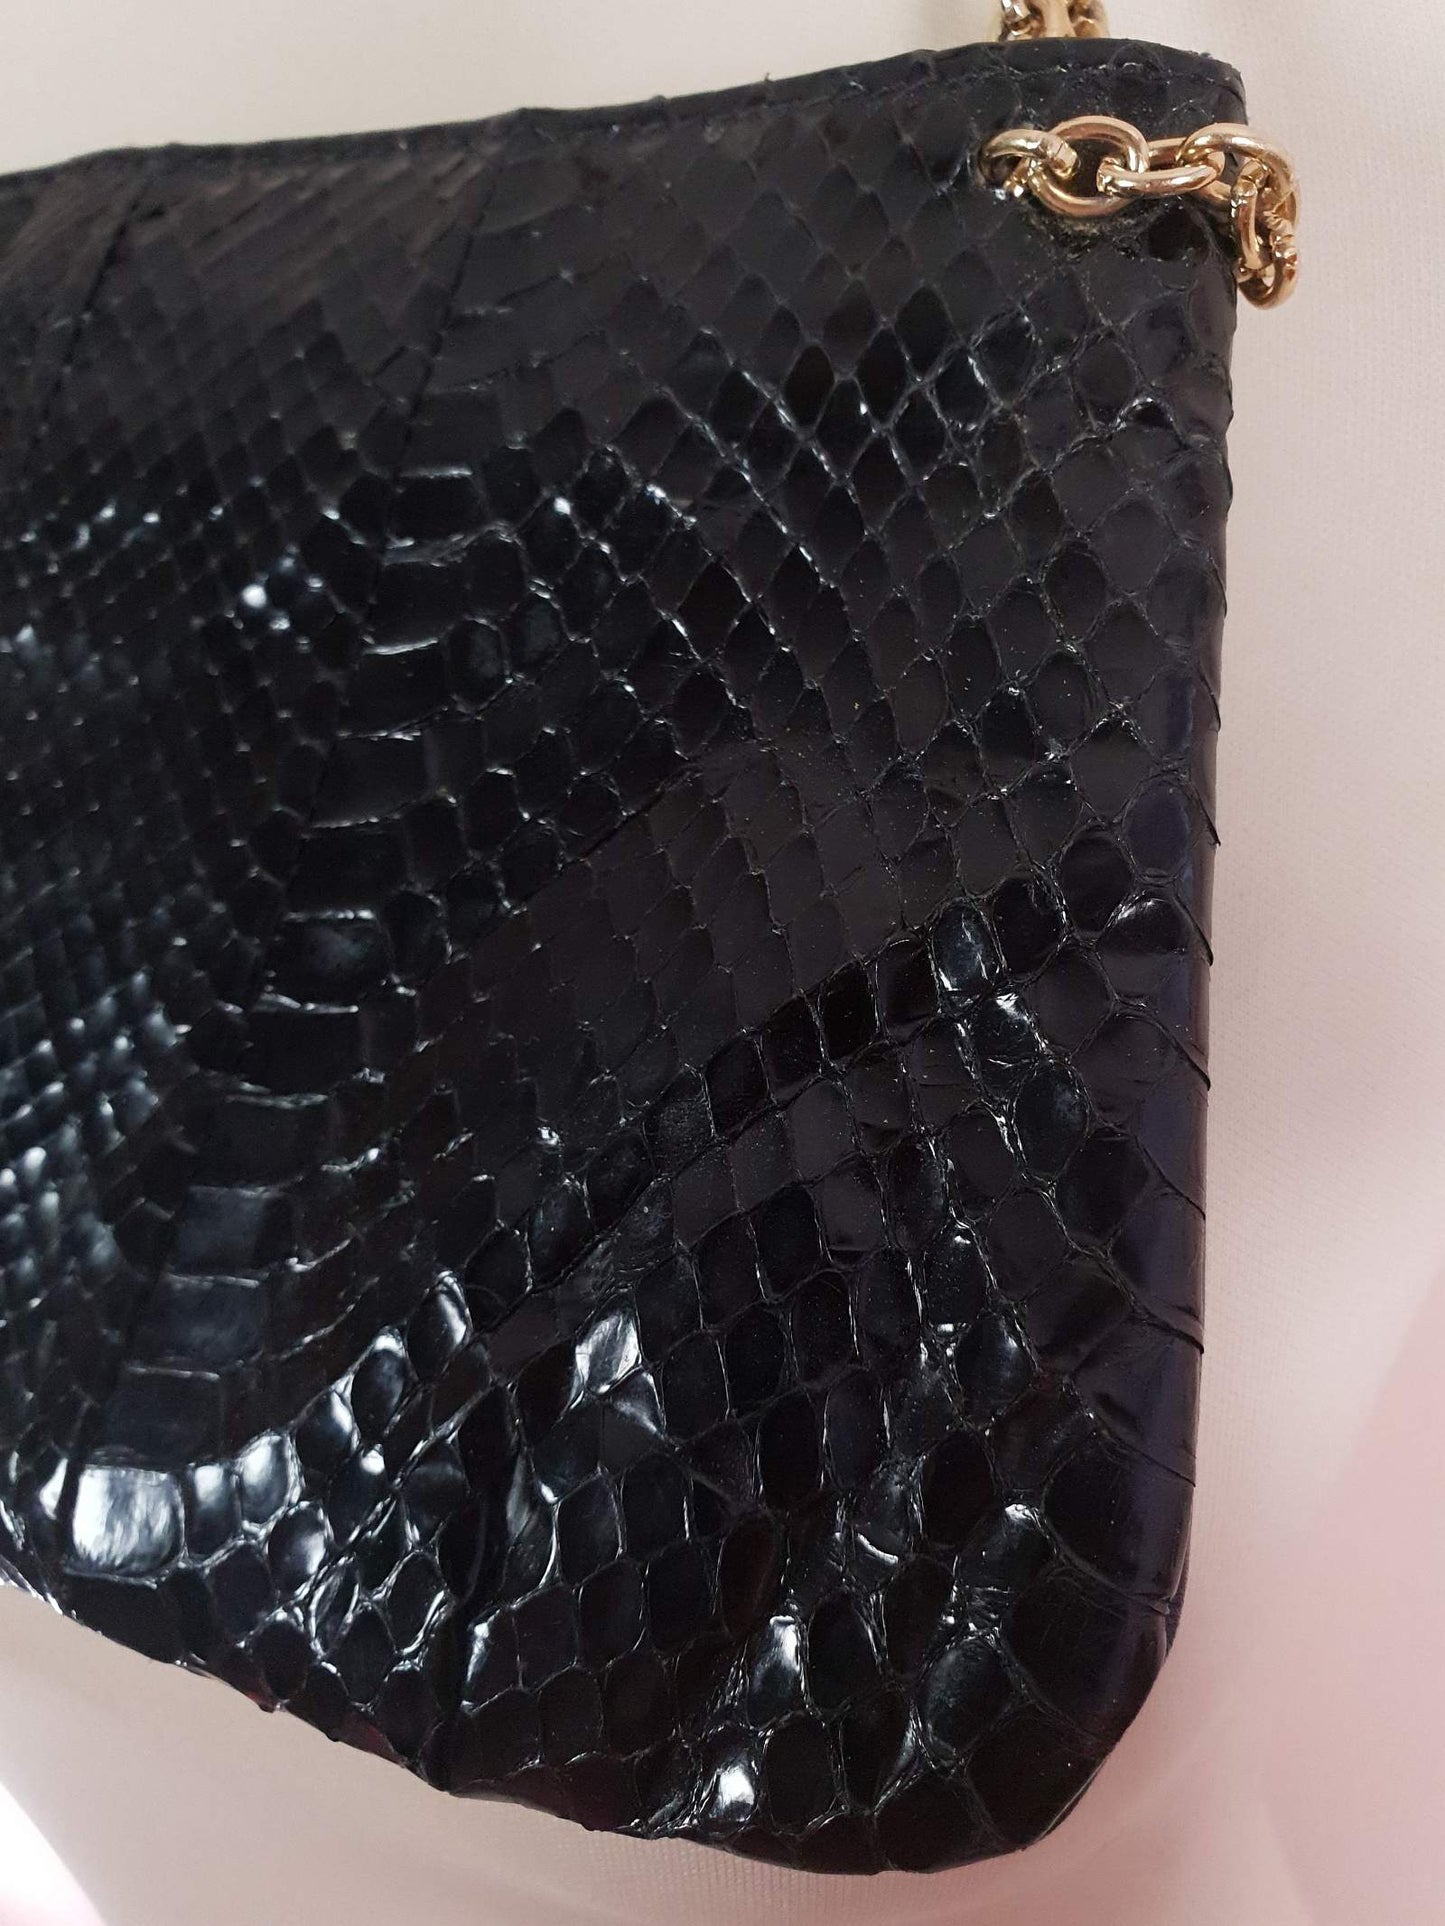 Vintage 1960s Snakeskin Leather Handbag Black Blue Evening Bag